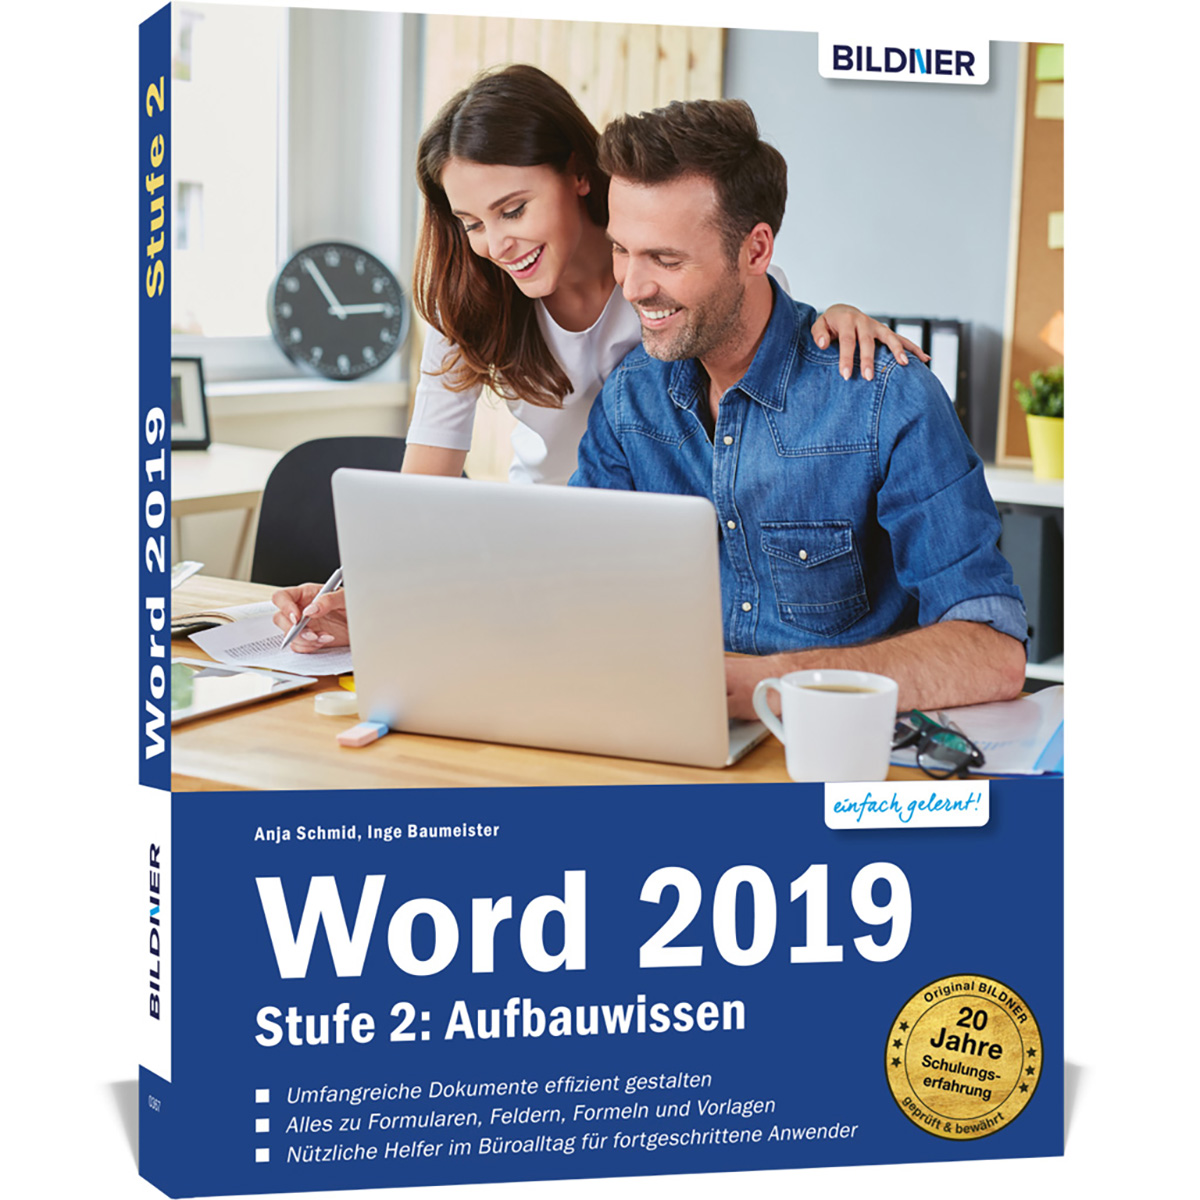 Word 2: 2019 Stufe - Aufbauwissen